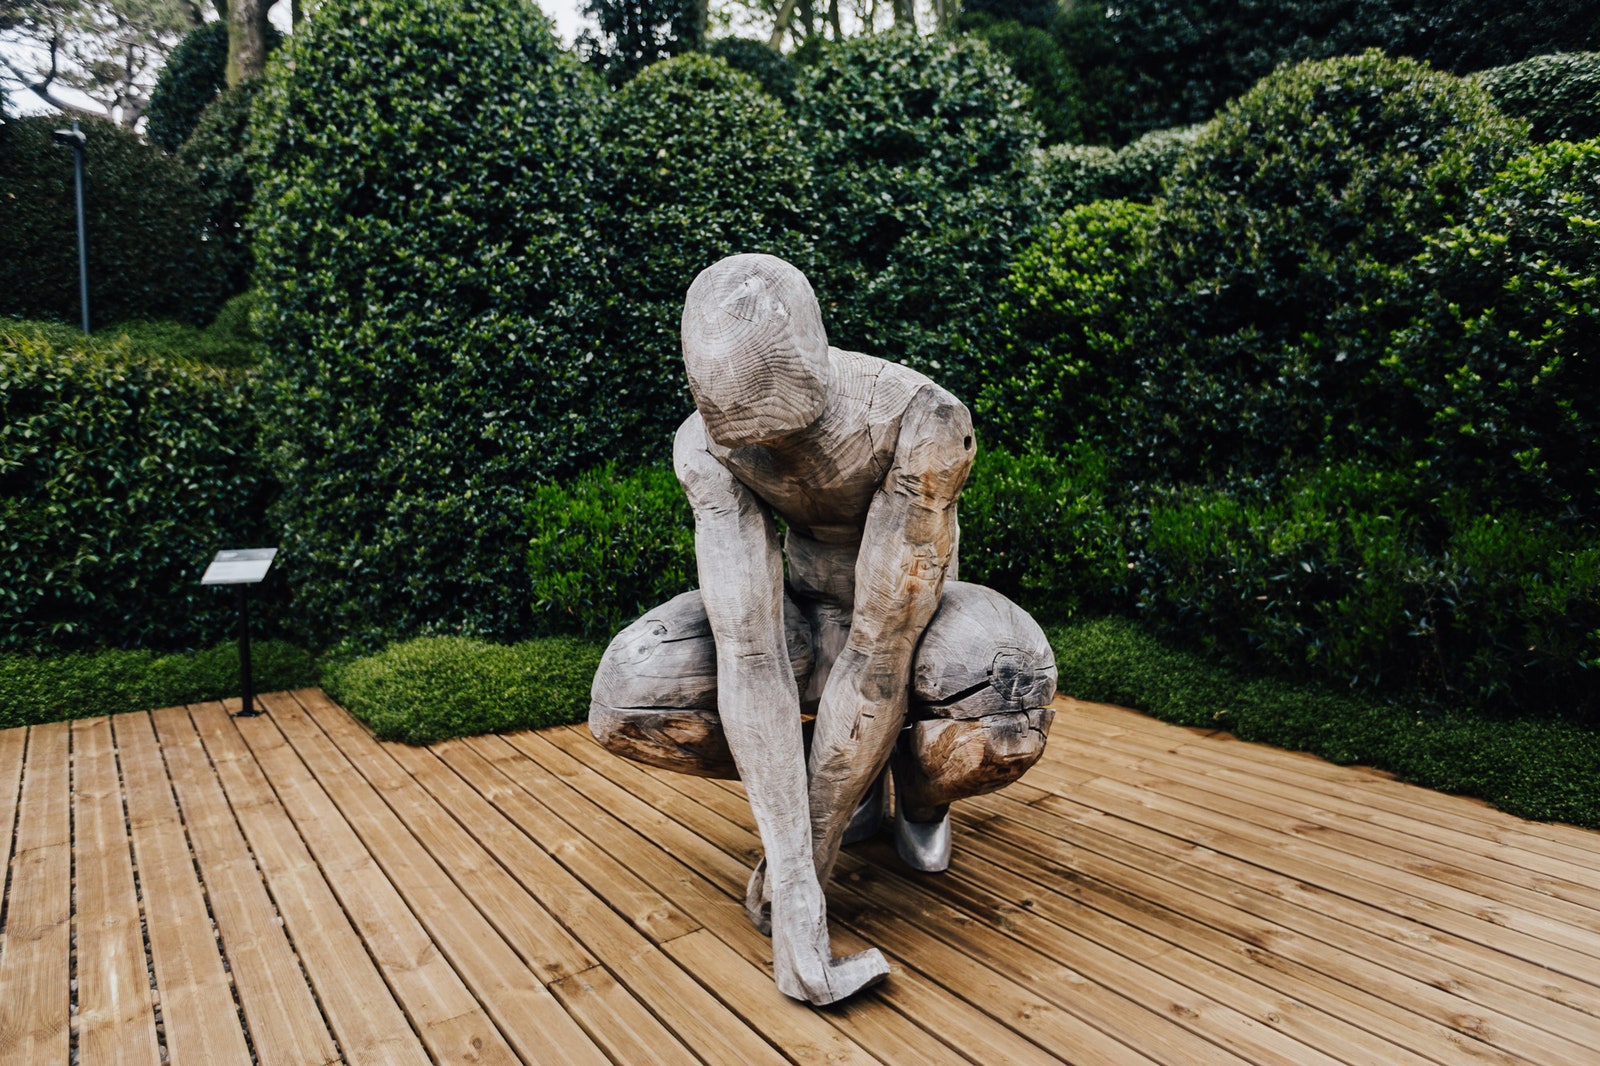 Через свою скульптуру Evolution 2 француз Сирил Андре выразил персональное видение эволюции человека он придал фигуре...